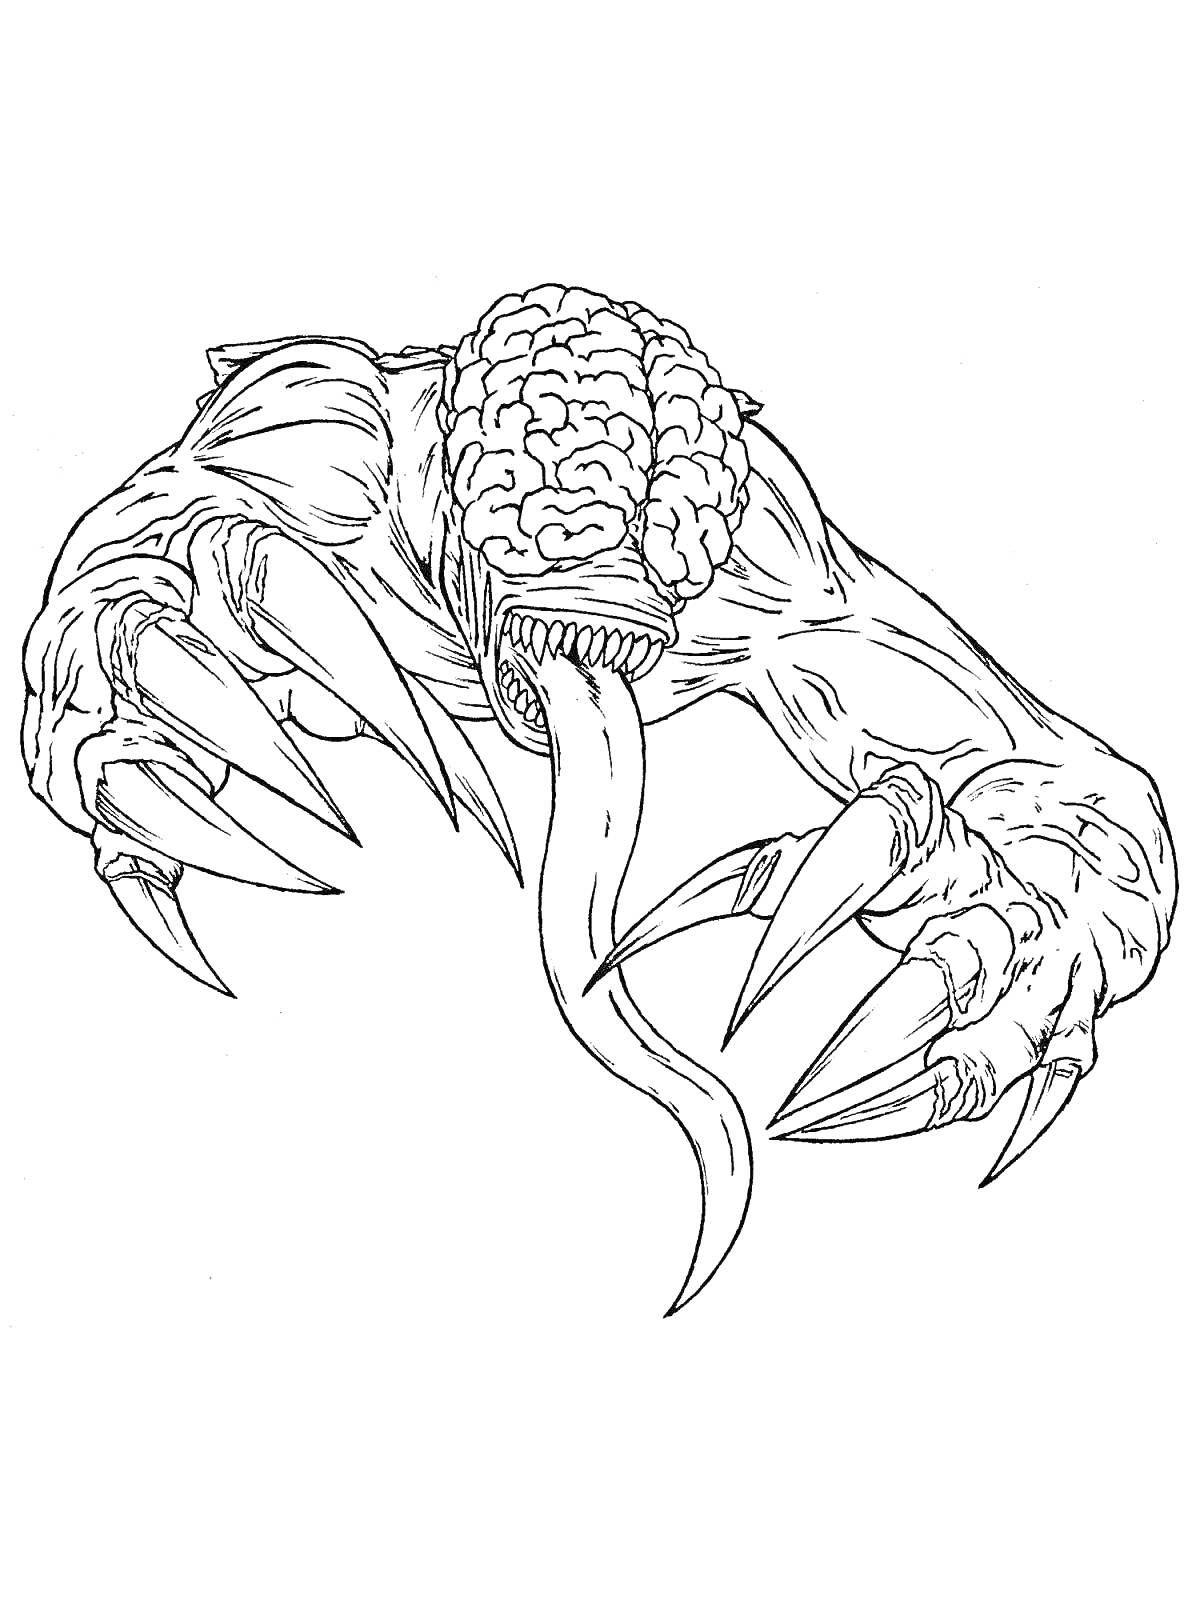 Раскраска Монстр с мозгом на голове, длинным языком и большими когтями